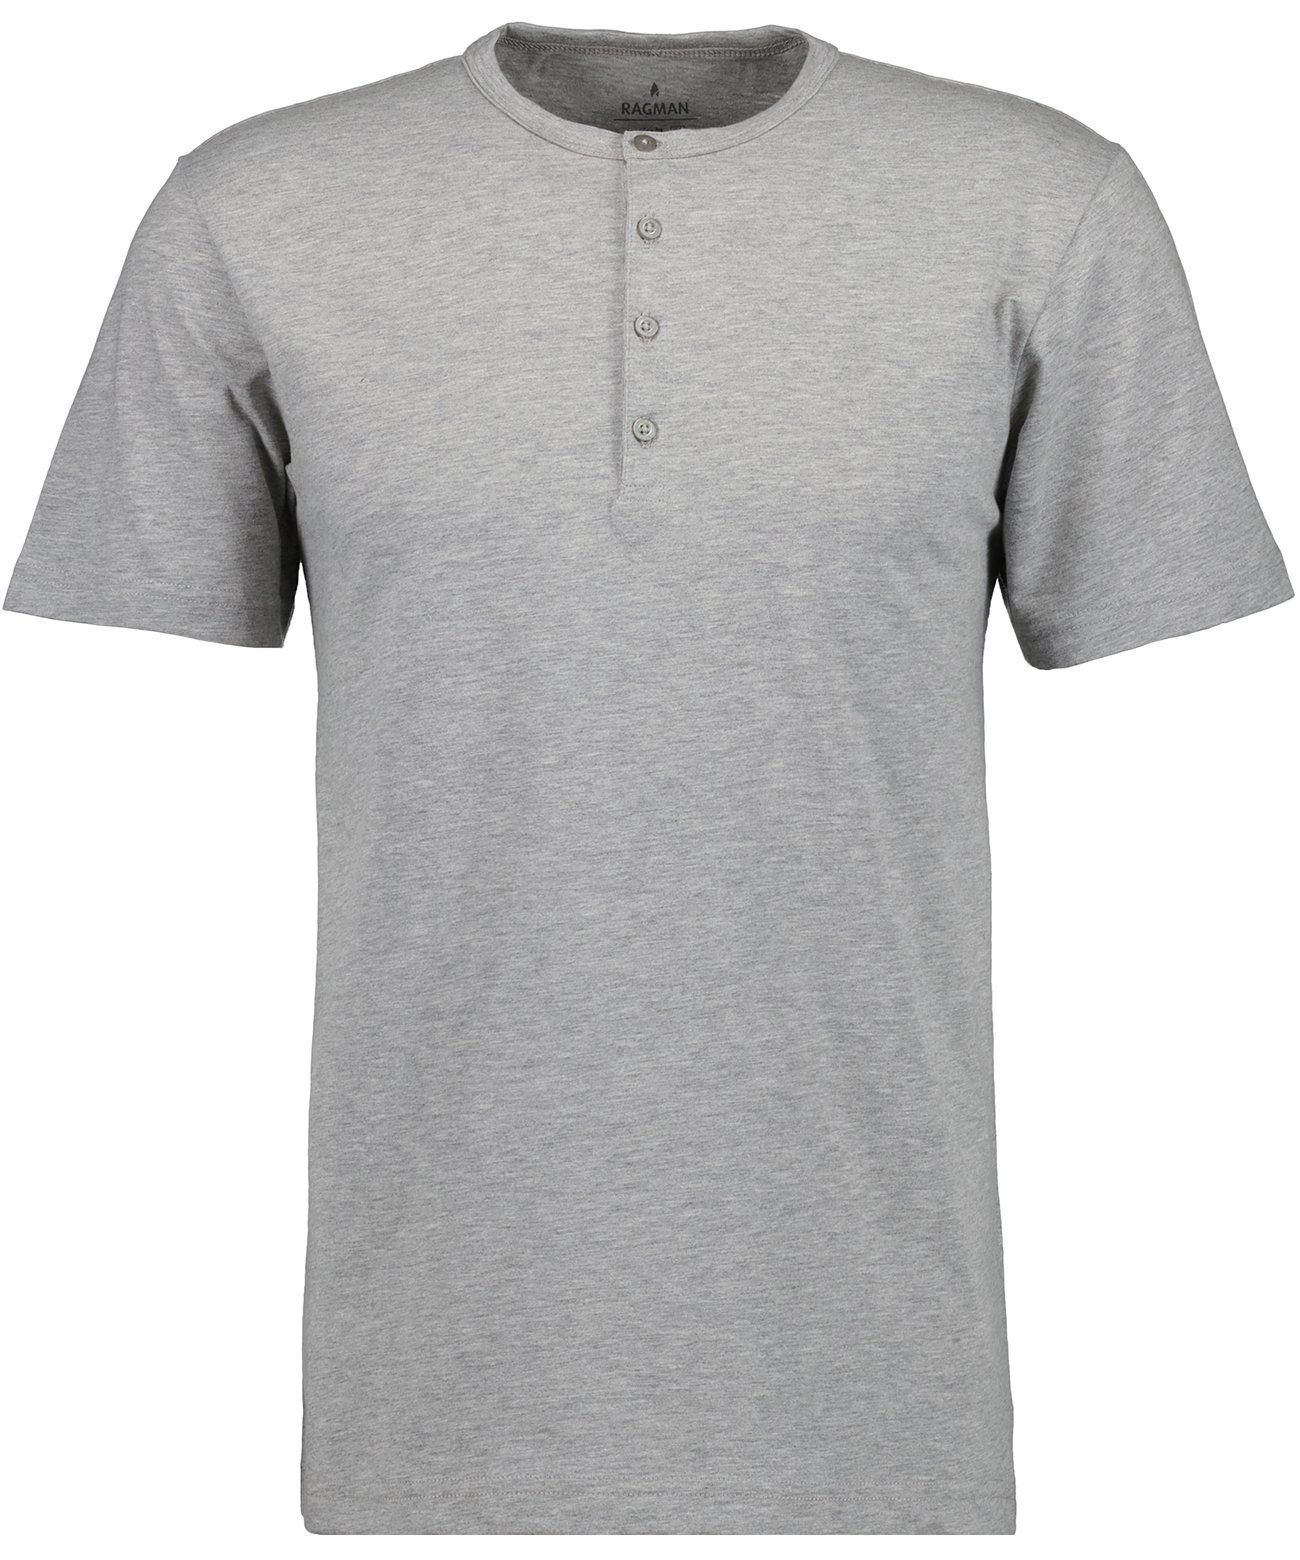 RAGMAN Longshirt Grau-Melange | T-Shirts